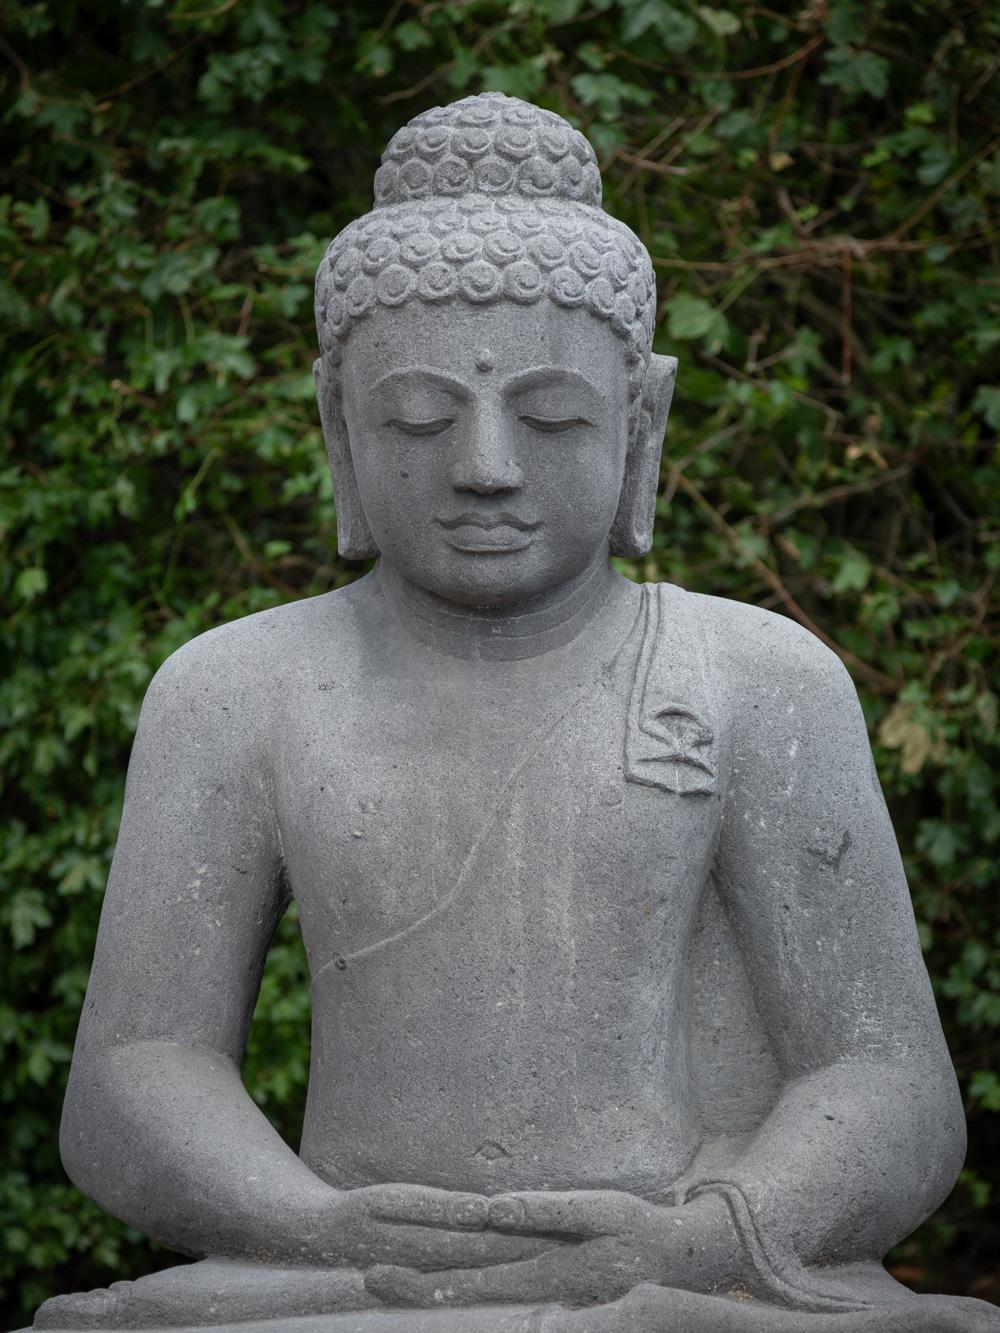 Diese große Buddha-Statue aus Lavastein ist ein prächtiges und spirituell bedeutendes Kunstwerk. Sie hat eine beeindruckende Höhe von 113 cm, eine Breite von 90 cm und eine Tiefe von 59 cm. Aus einem einzigen Lavasteinblock geschnitzt, verkörpert er